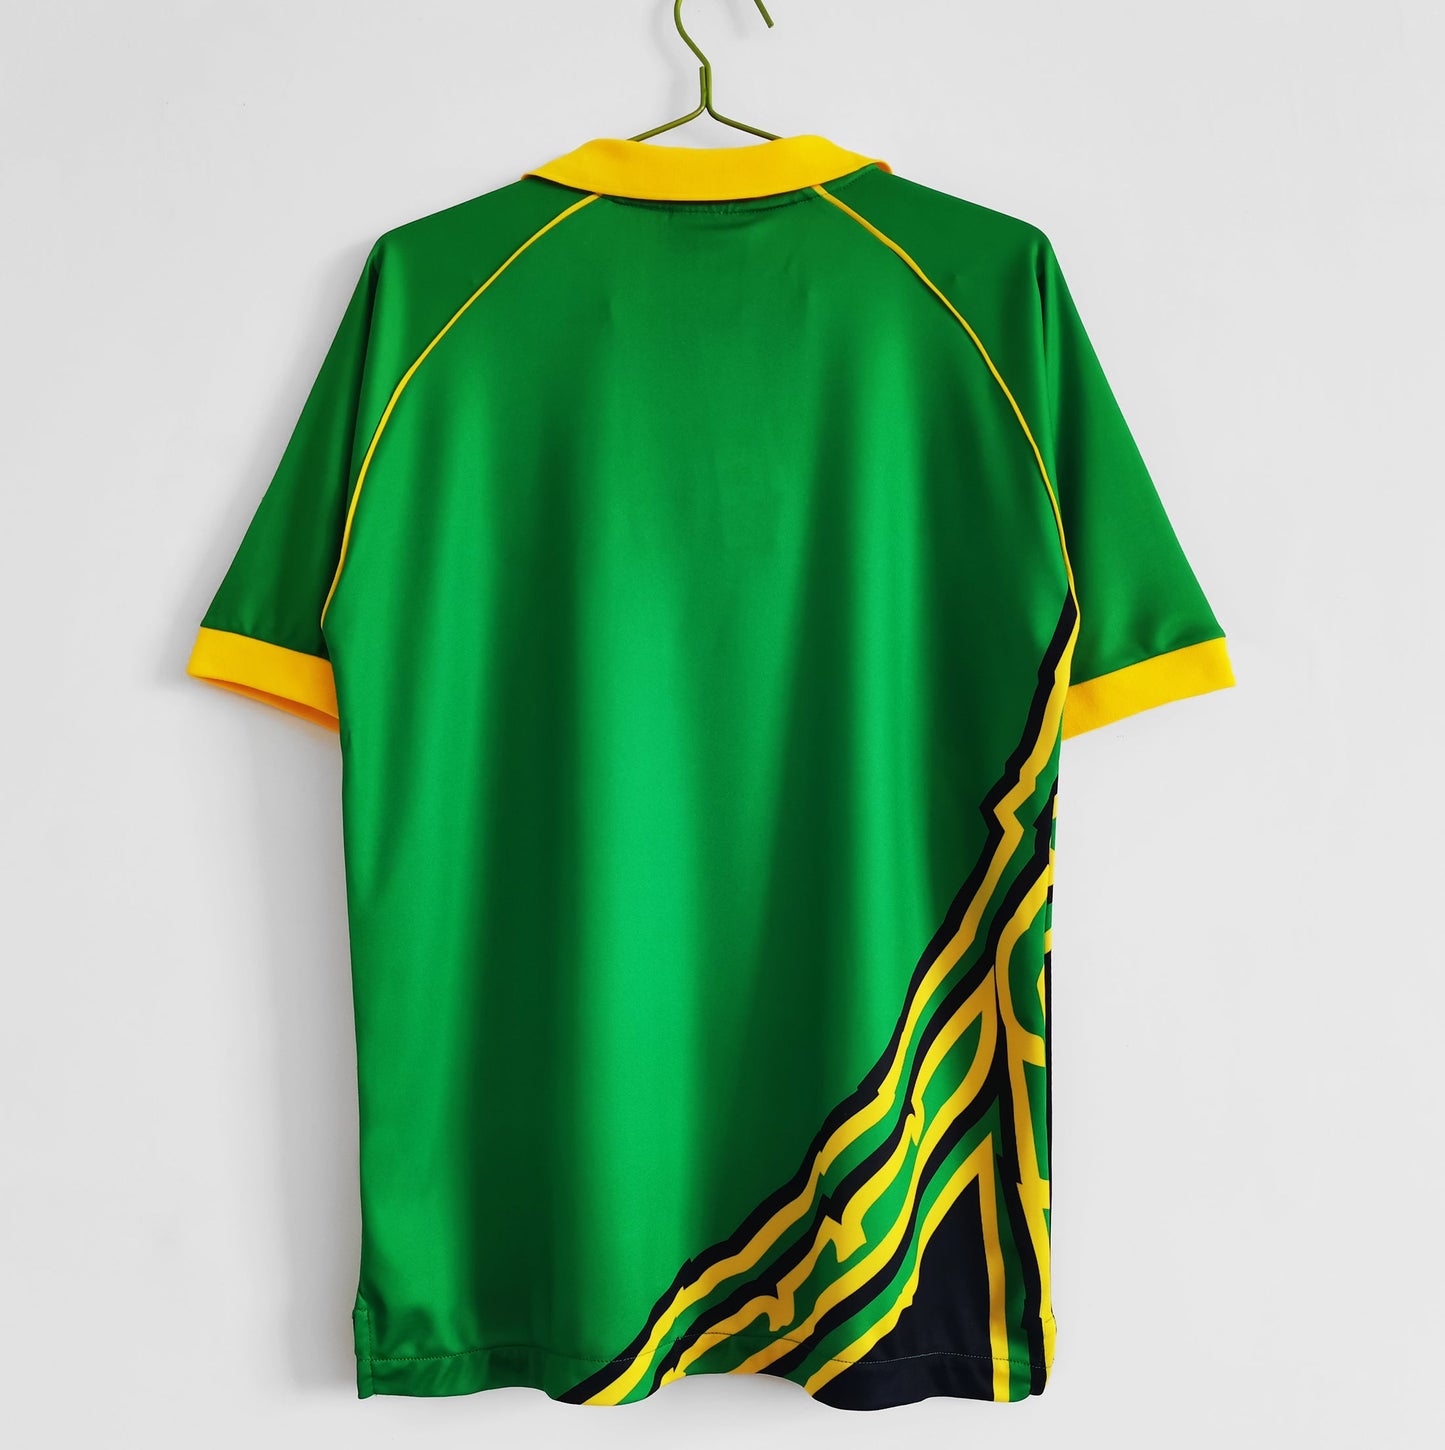 Jamaica National Team 1998 Away Retro Shirt